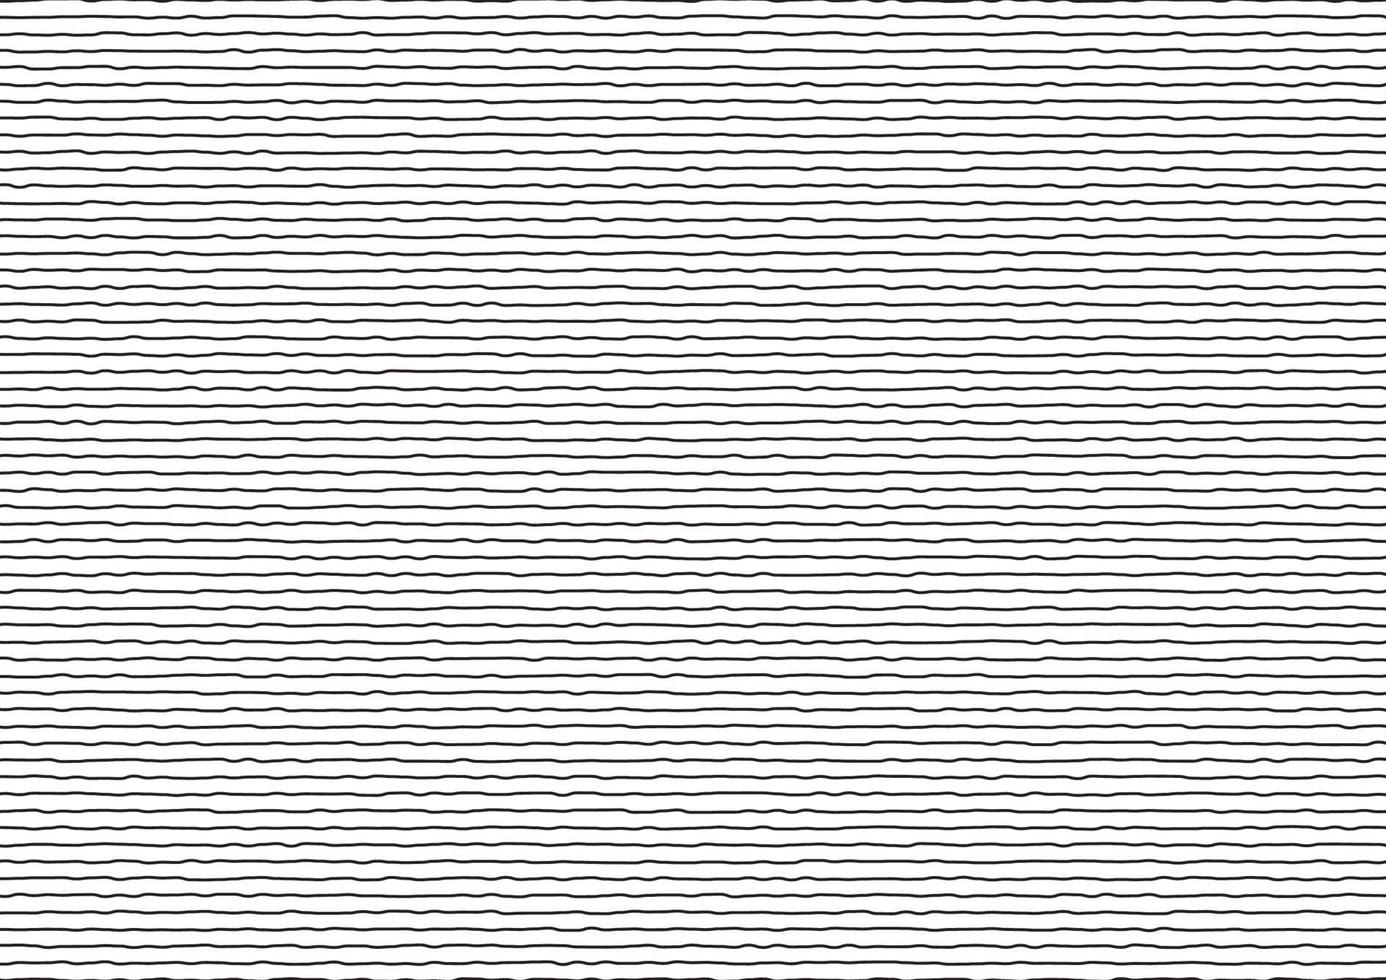 abstracte dunne zwarte strepen ruwe horizontale lijnen op een witte achtergrond. vector